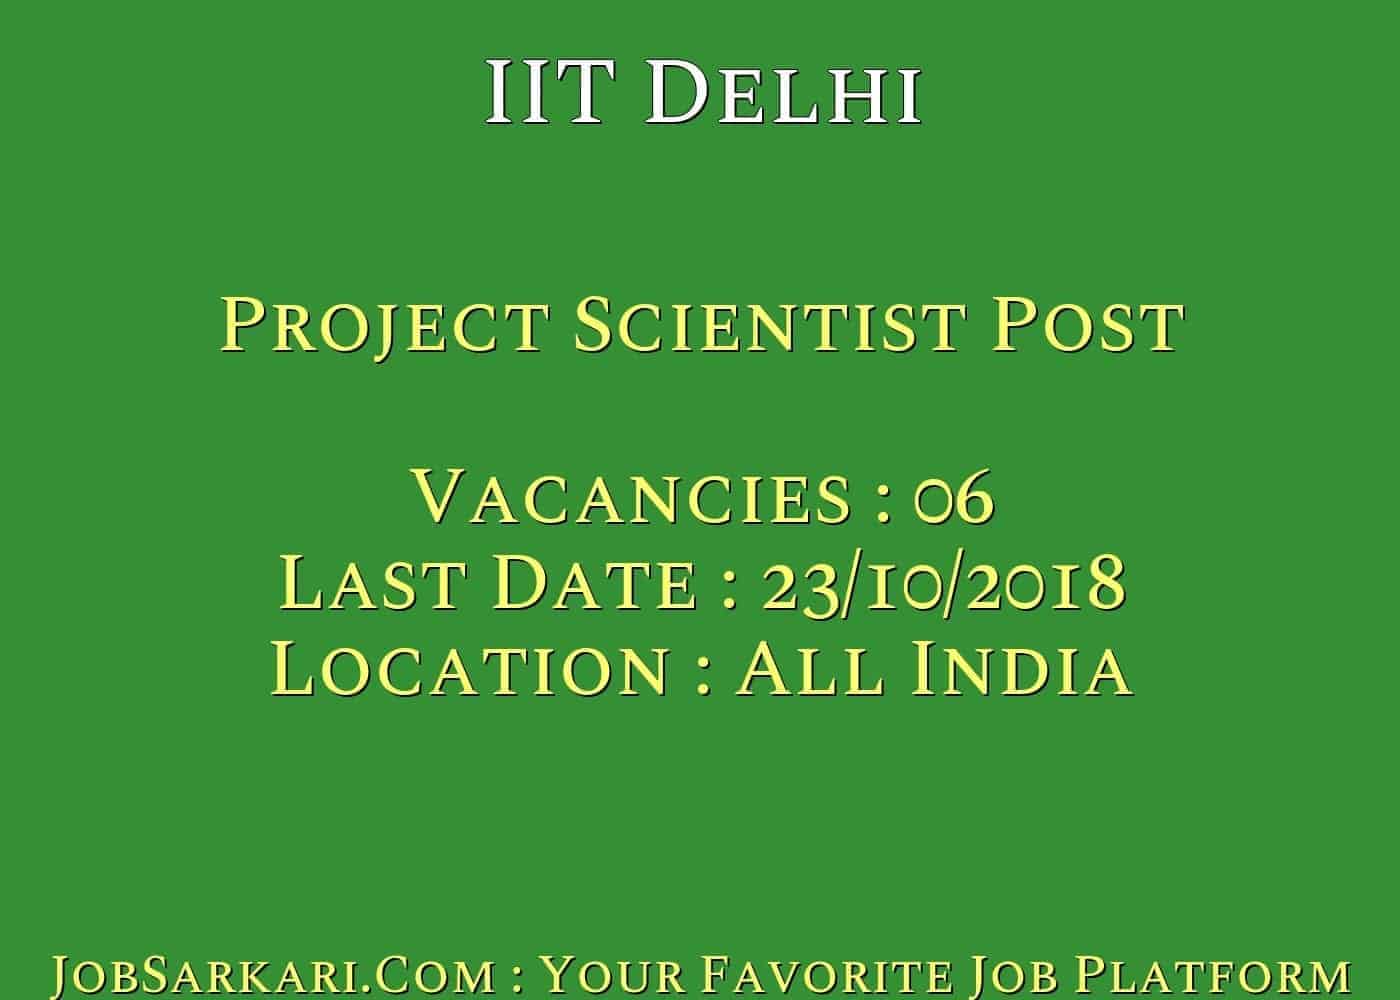 IIT Delhi Recruitment 2018 Project Scientist Post